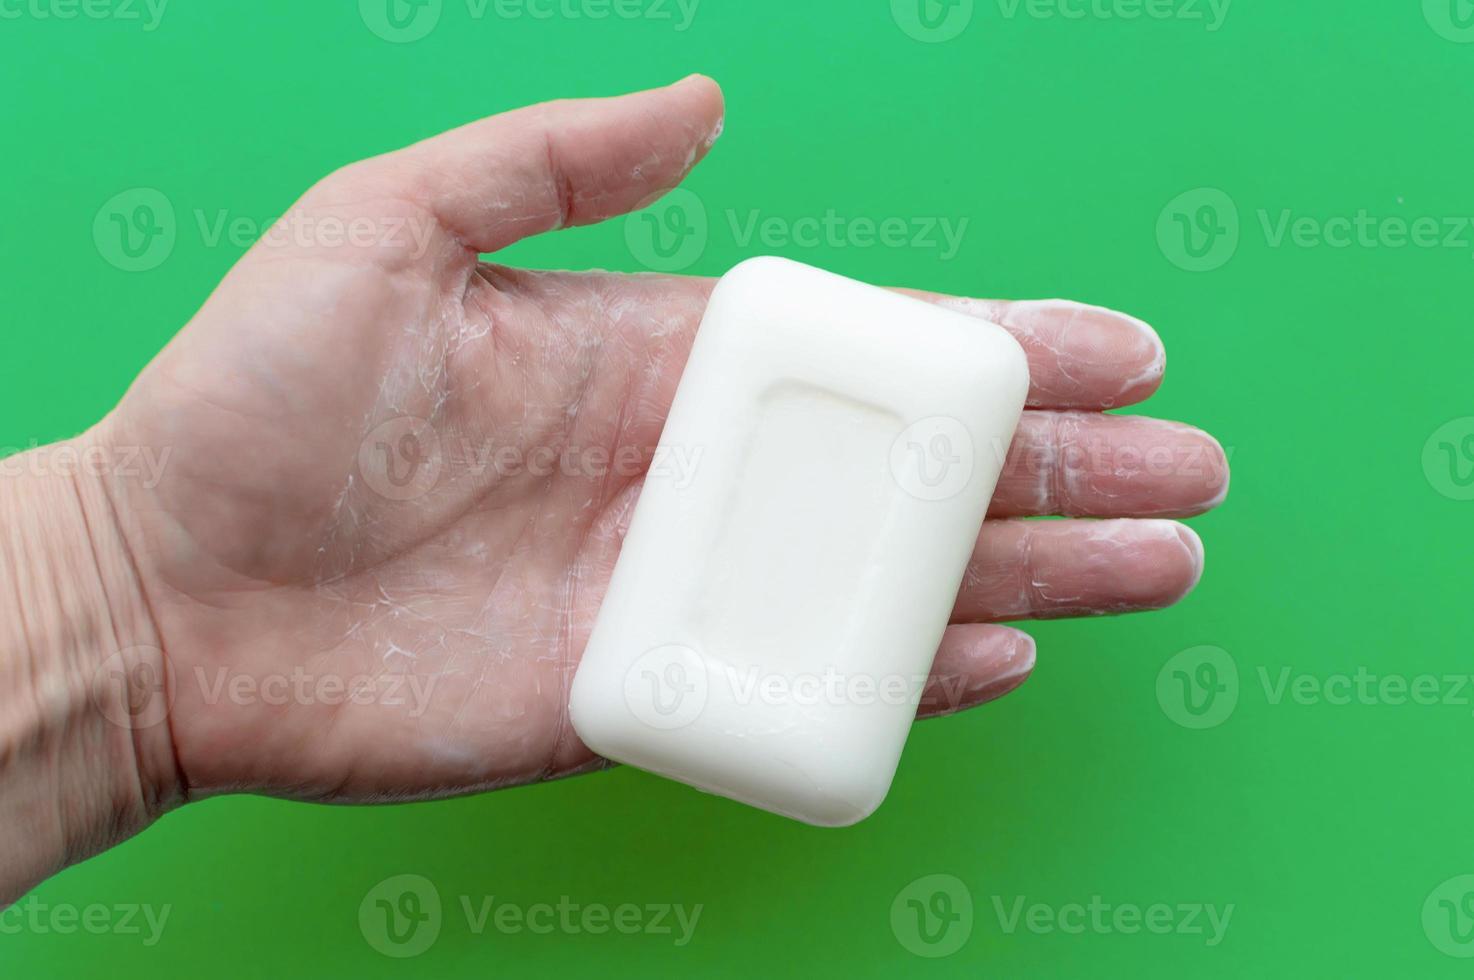 jabón blanco en la mano de un hombre sobre un fondo verde. concepto de higiene y cuidado corporal. foto